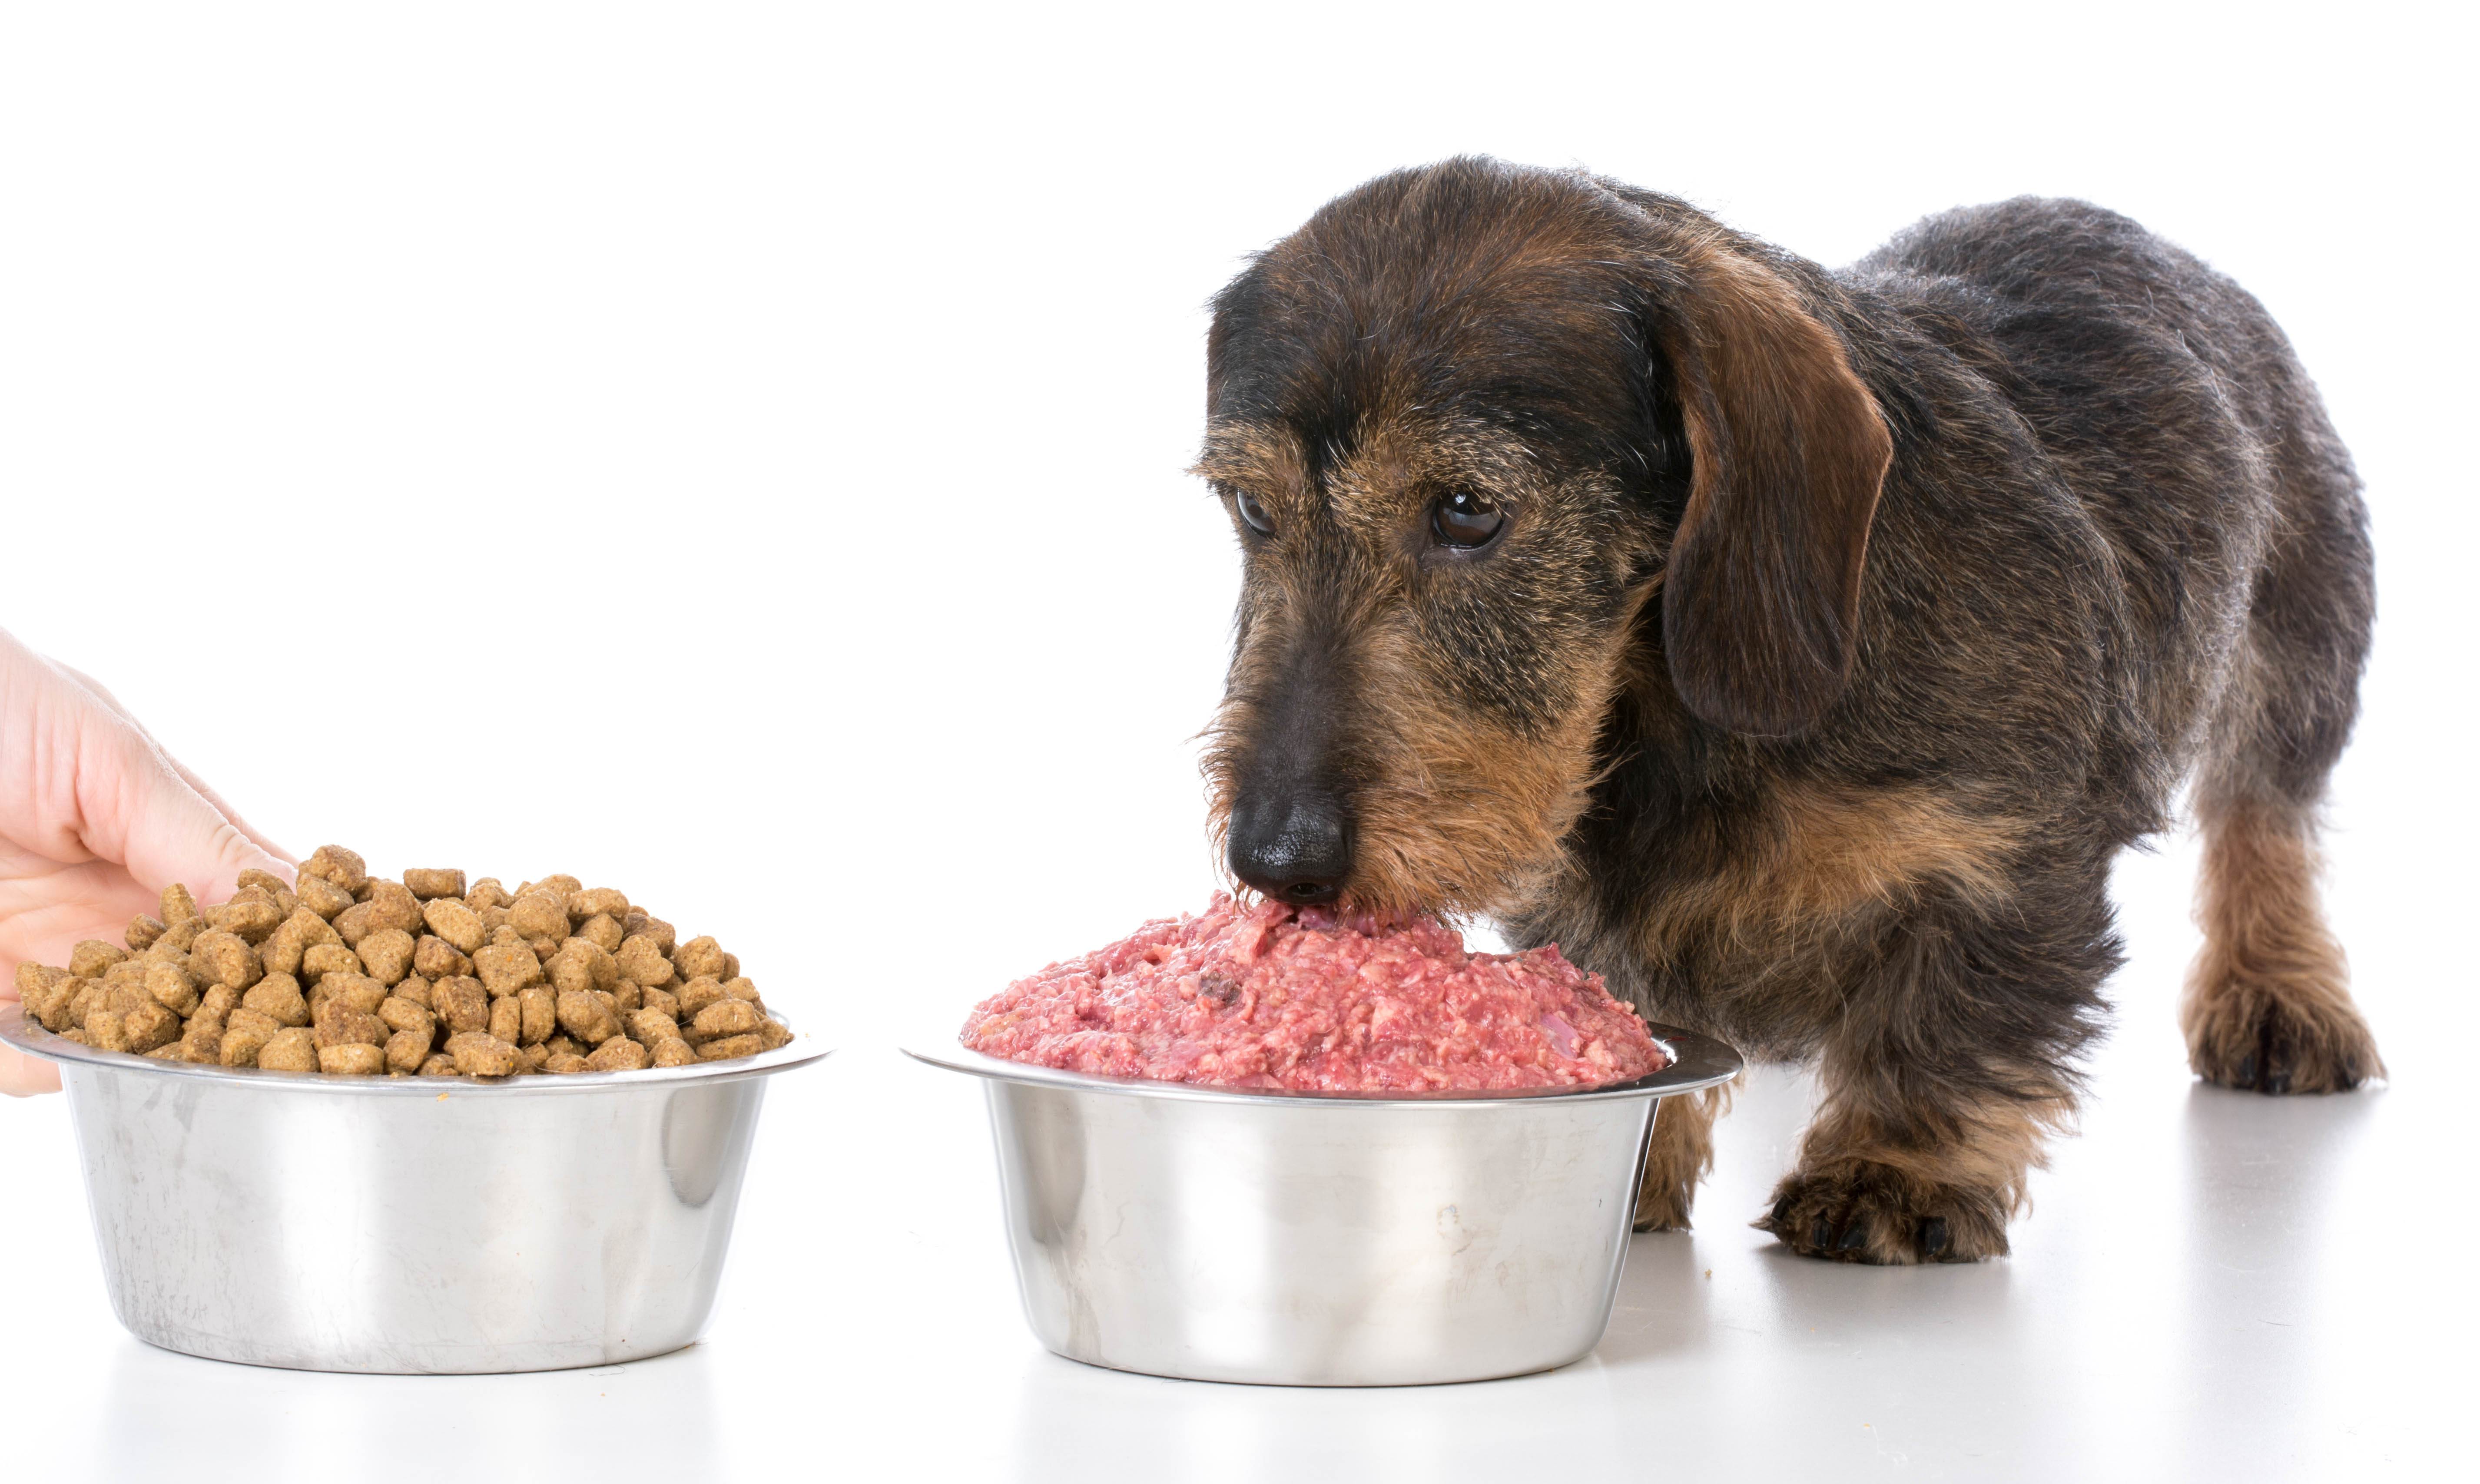 Кормить хасок: чем лучше, как правильно составить рацион питания в домашних условиях, какая сухая еда хорошая, что можно есть толстой собаке, а также уход за миской